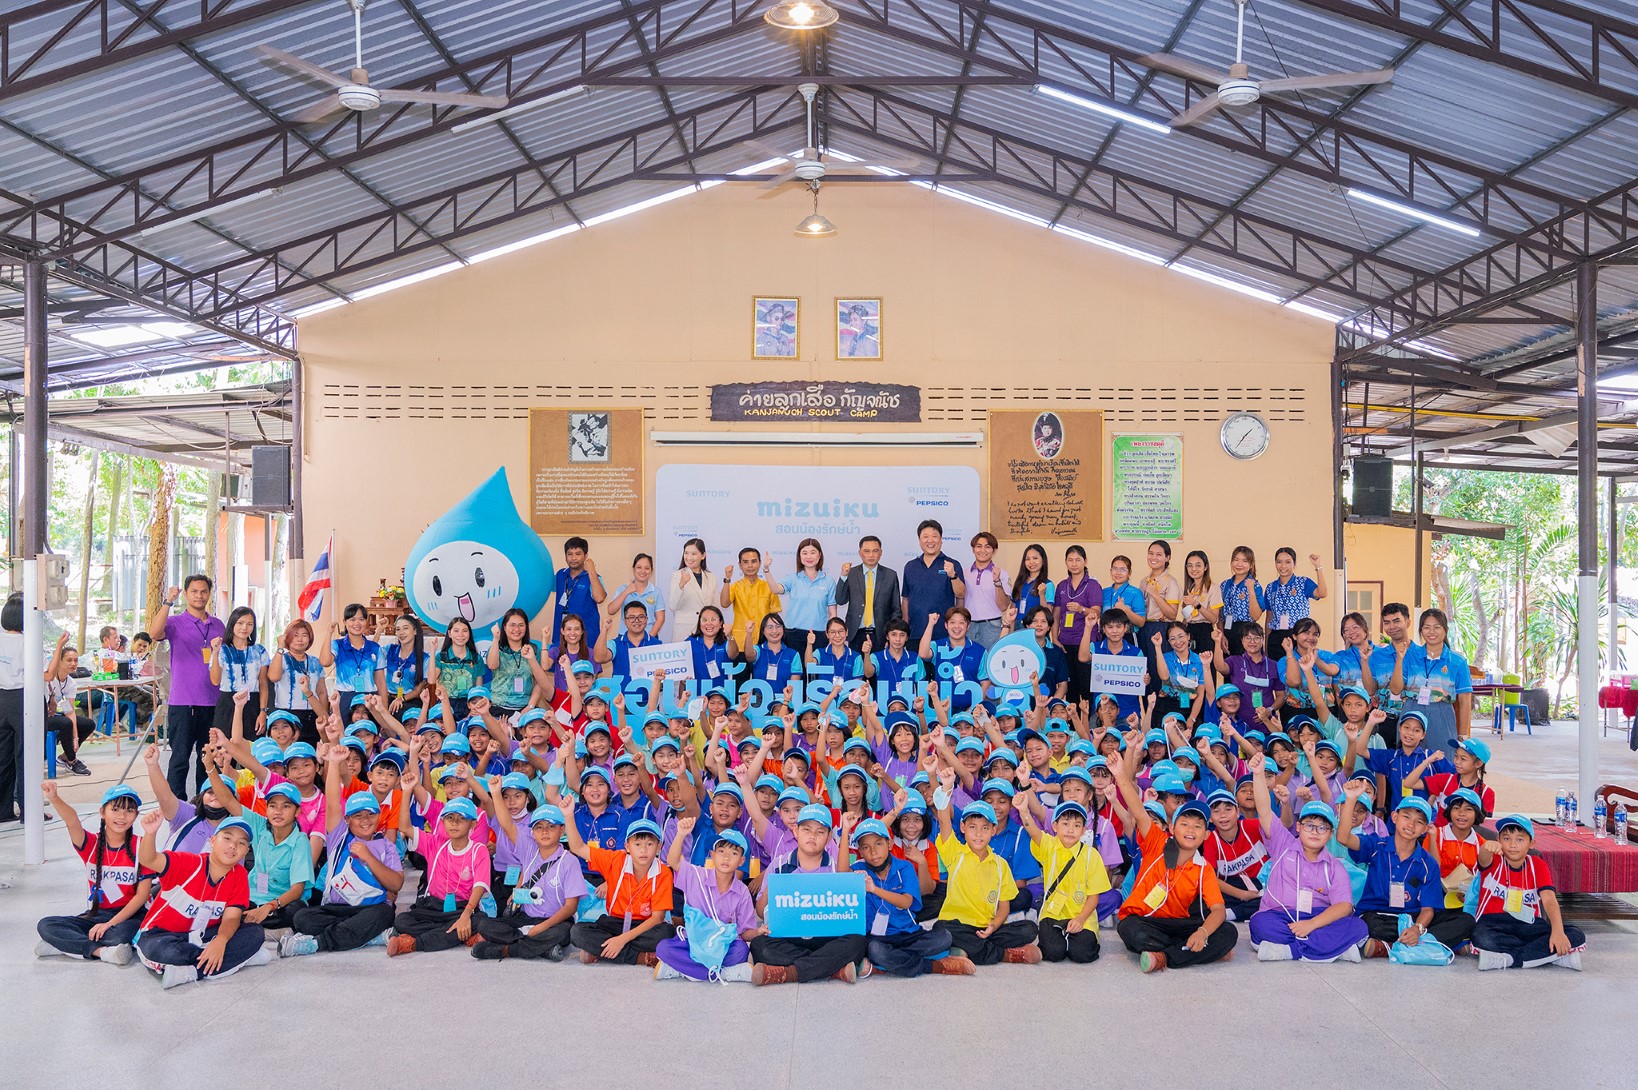 ซันโทรี่ เป๊ปซี่โค ประเทศไทย เดินหน้าจัด “ค่ายเยาวชนรักษ์น้ำ” ภายใต้โครงการมิซุอิกุ ปีที่ 5 ส่งเสริมเด็กไทย ใส่ใจอนุรักษ์ทรัพยากรน้ำและสิ่งแวดล้อม